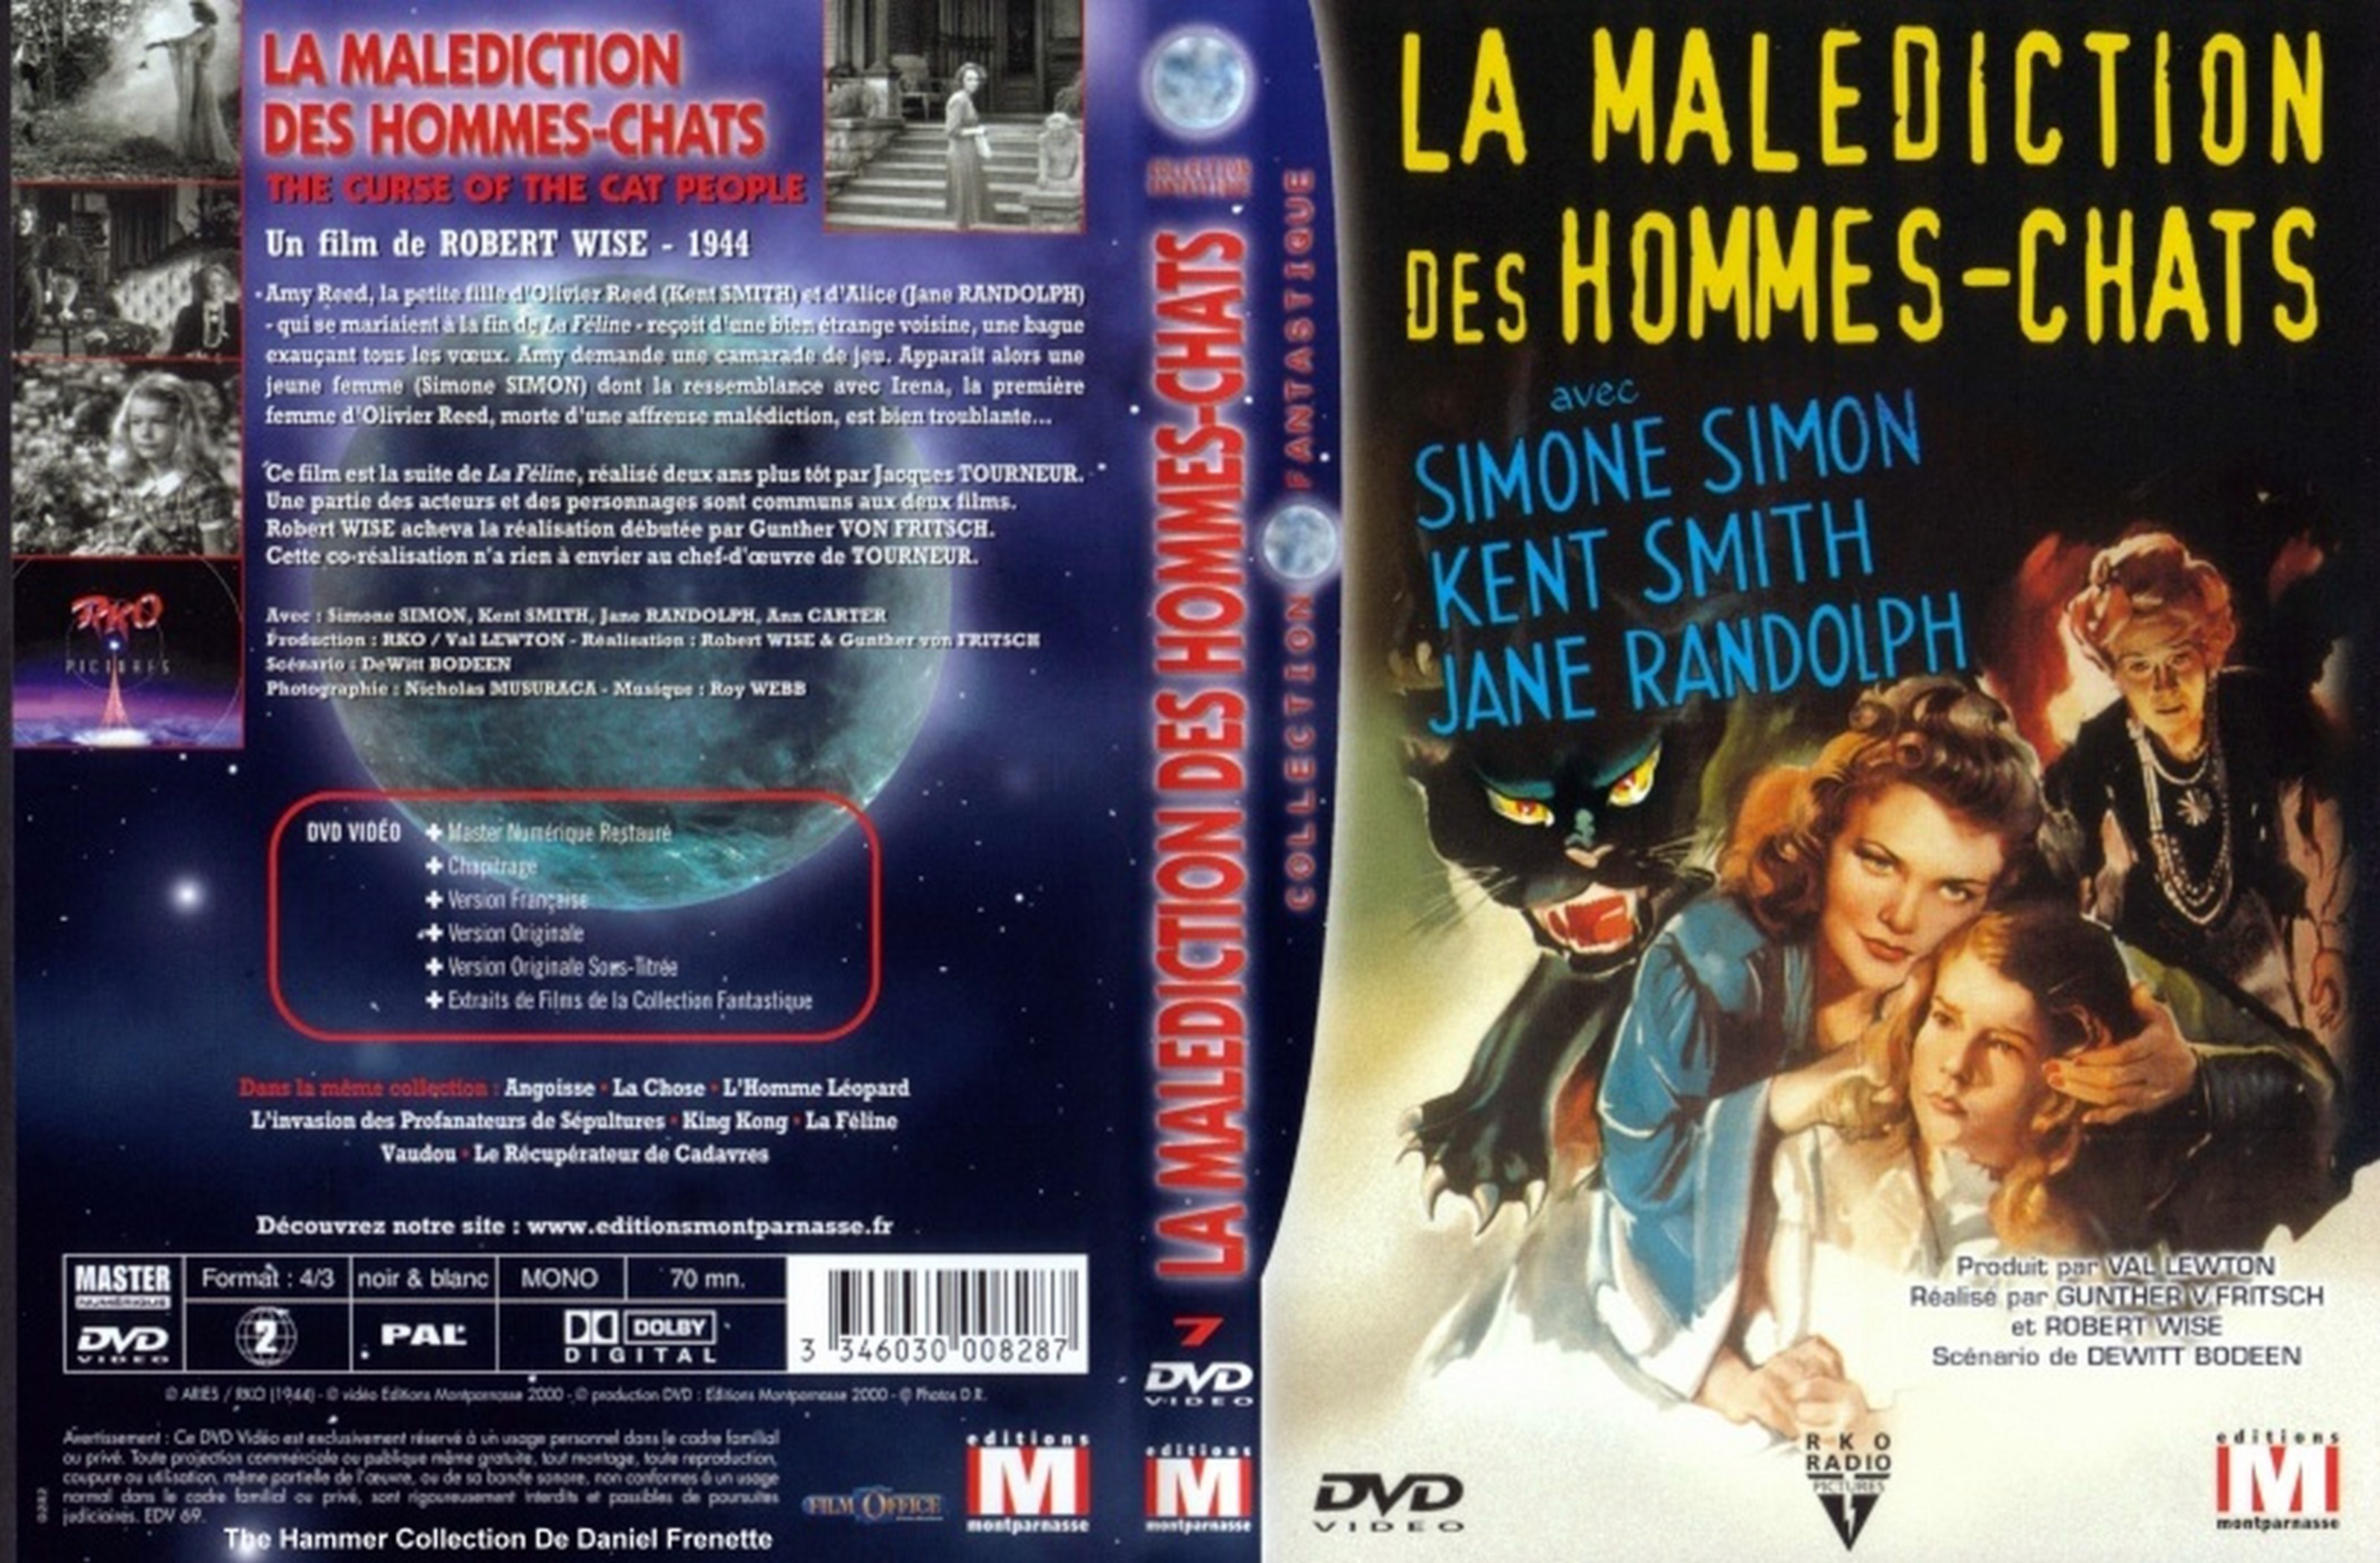 Jaquette DVD La malediction des hommes chats